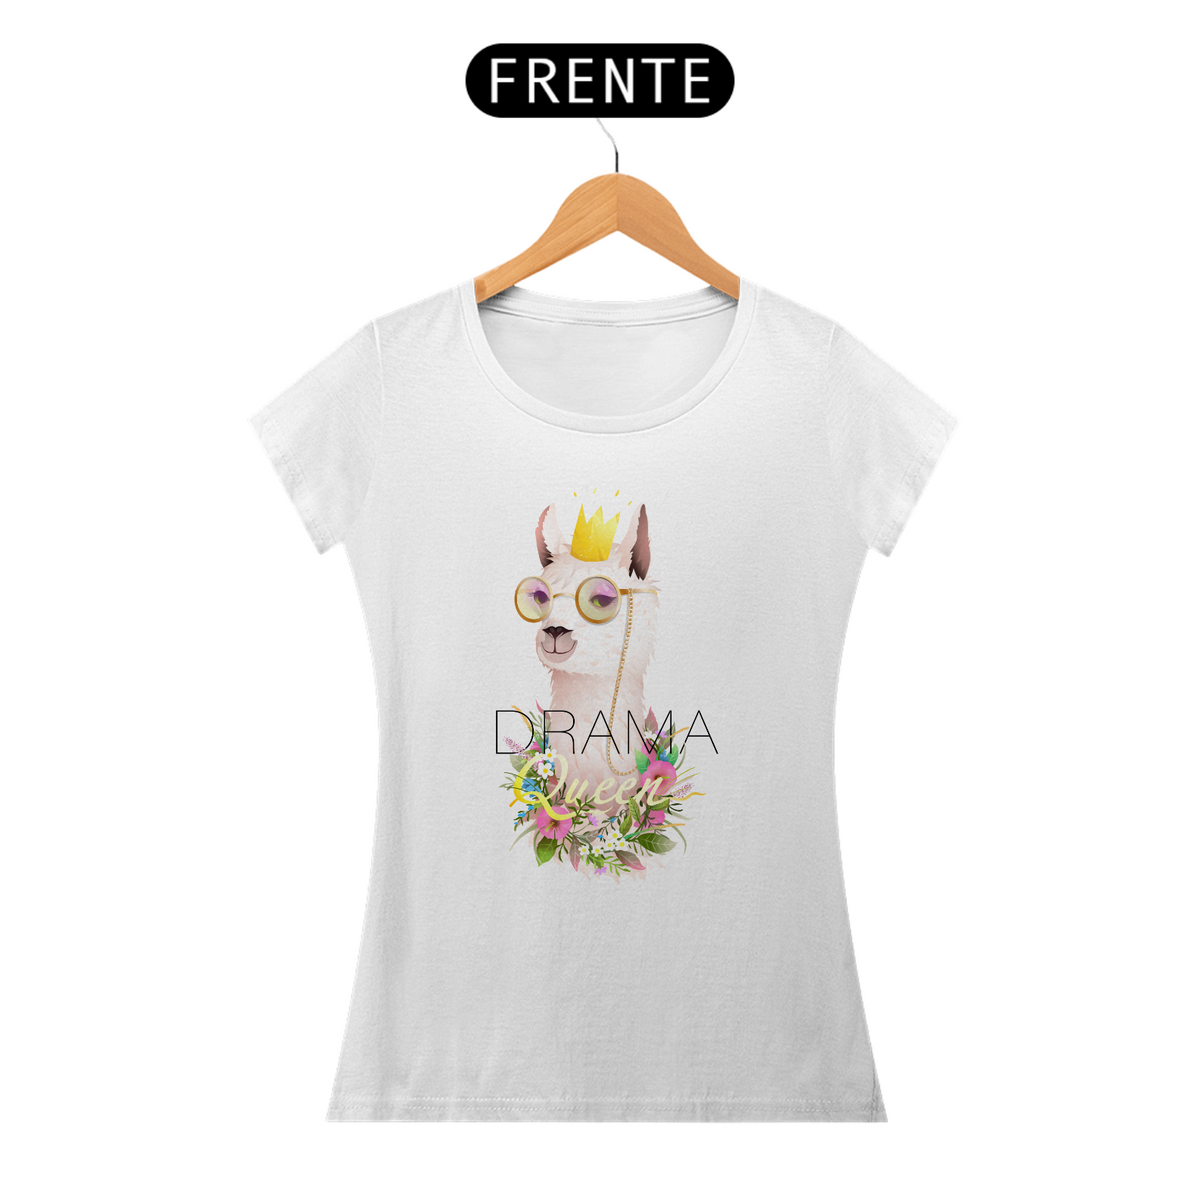 Nome do produto: Camiseta Babylook com Estampa Llama Drama Queen - Lhama Rainha Dramática